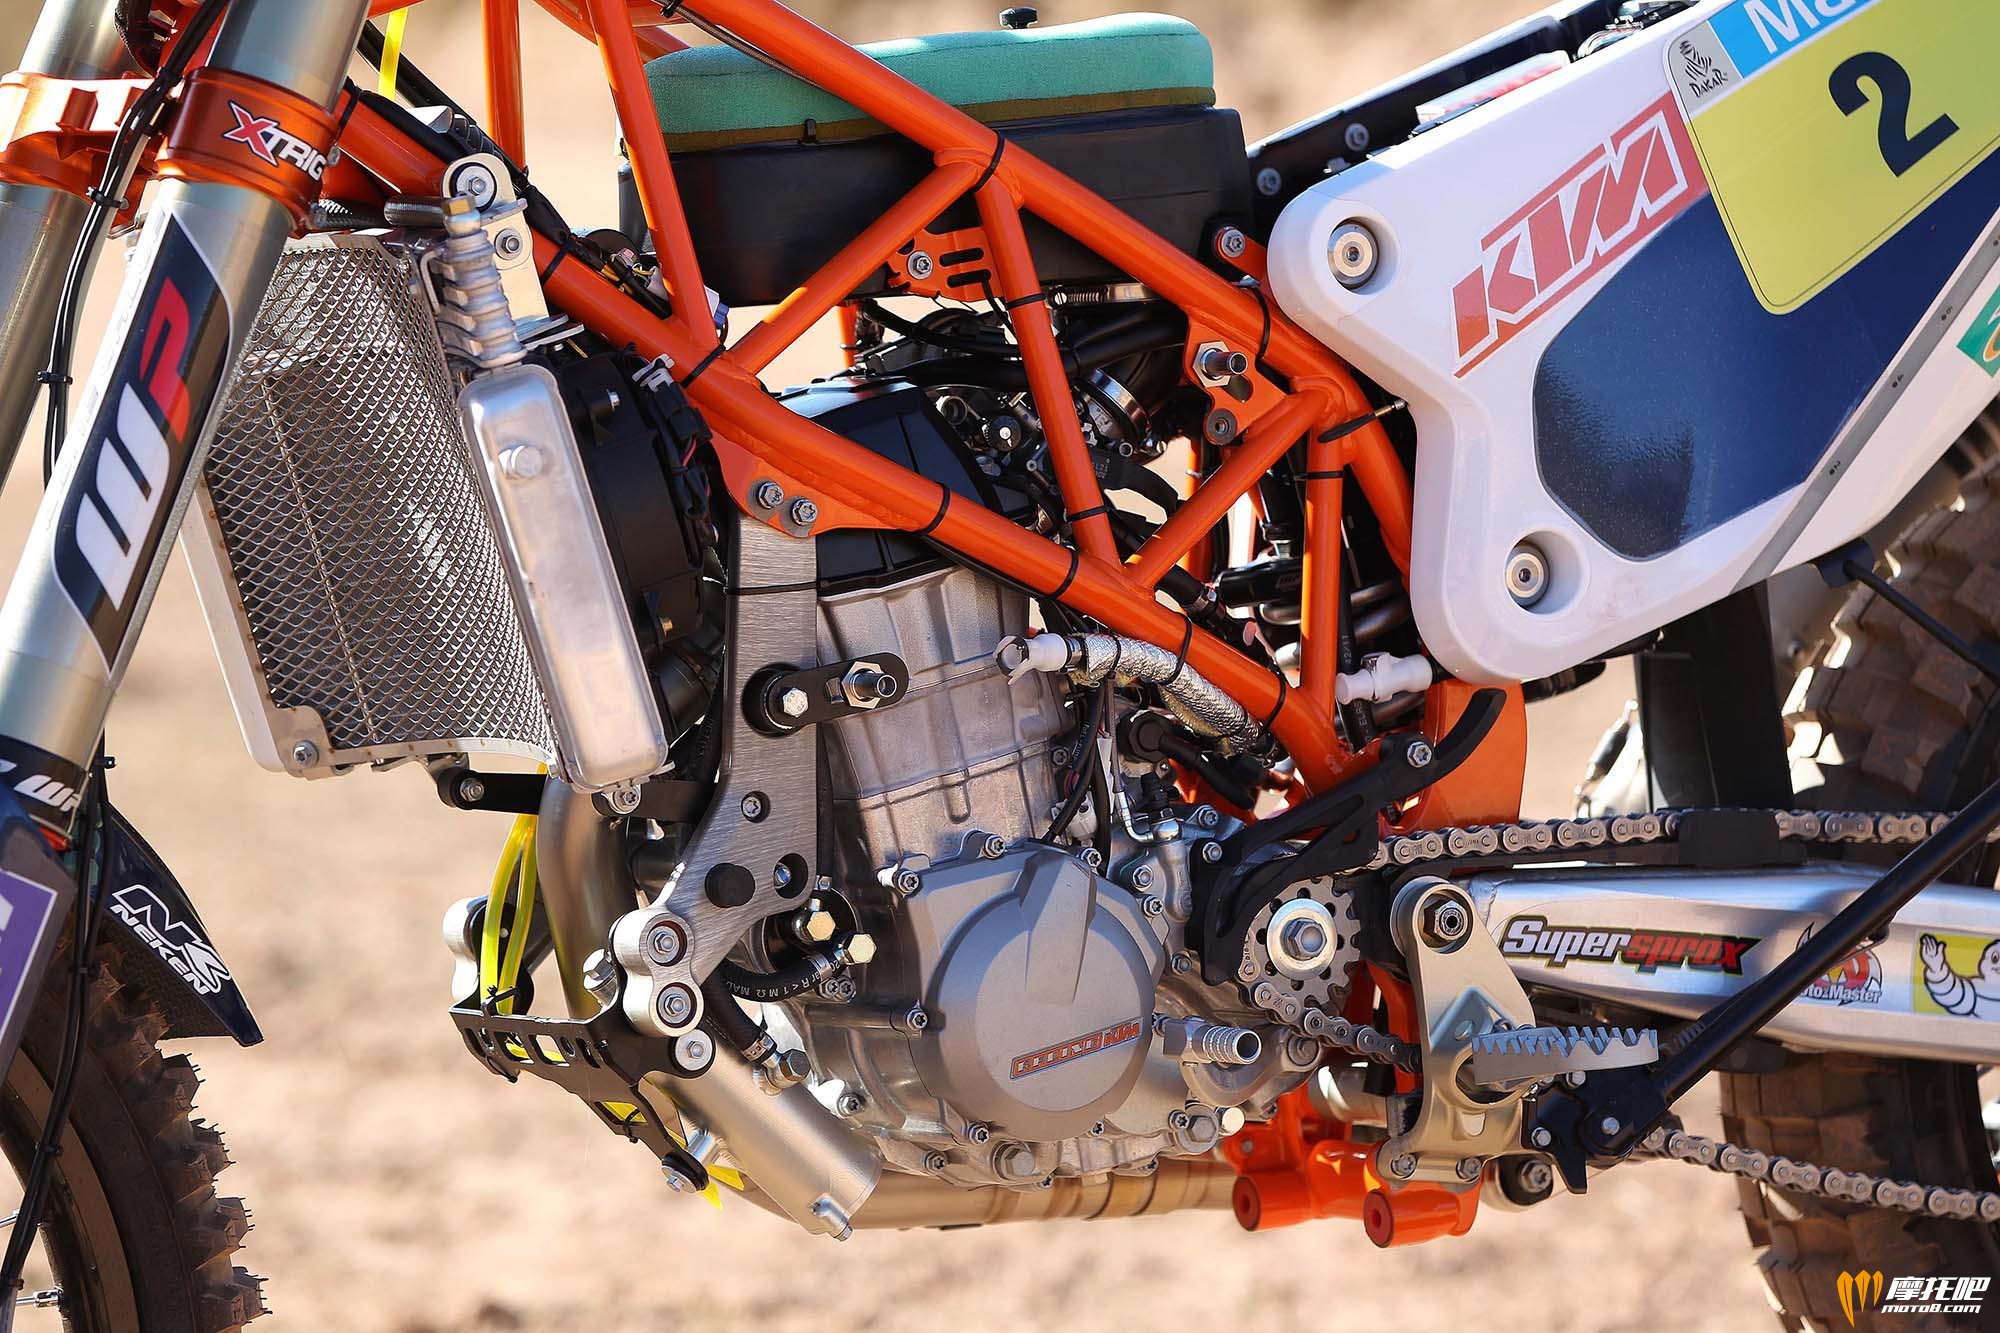 2014-KTM-450-Rally-race-bike-02.jpg